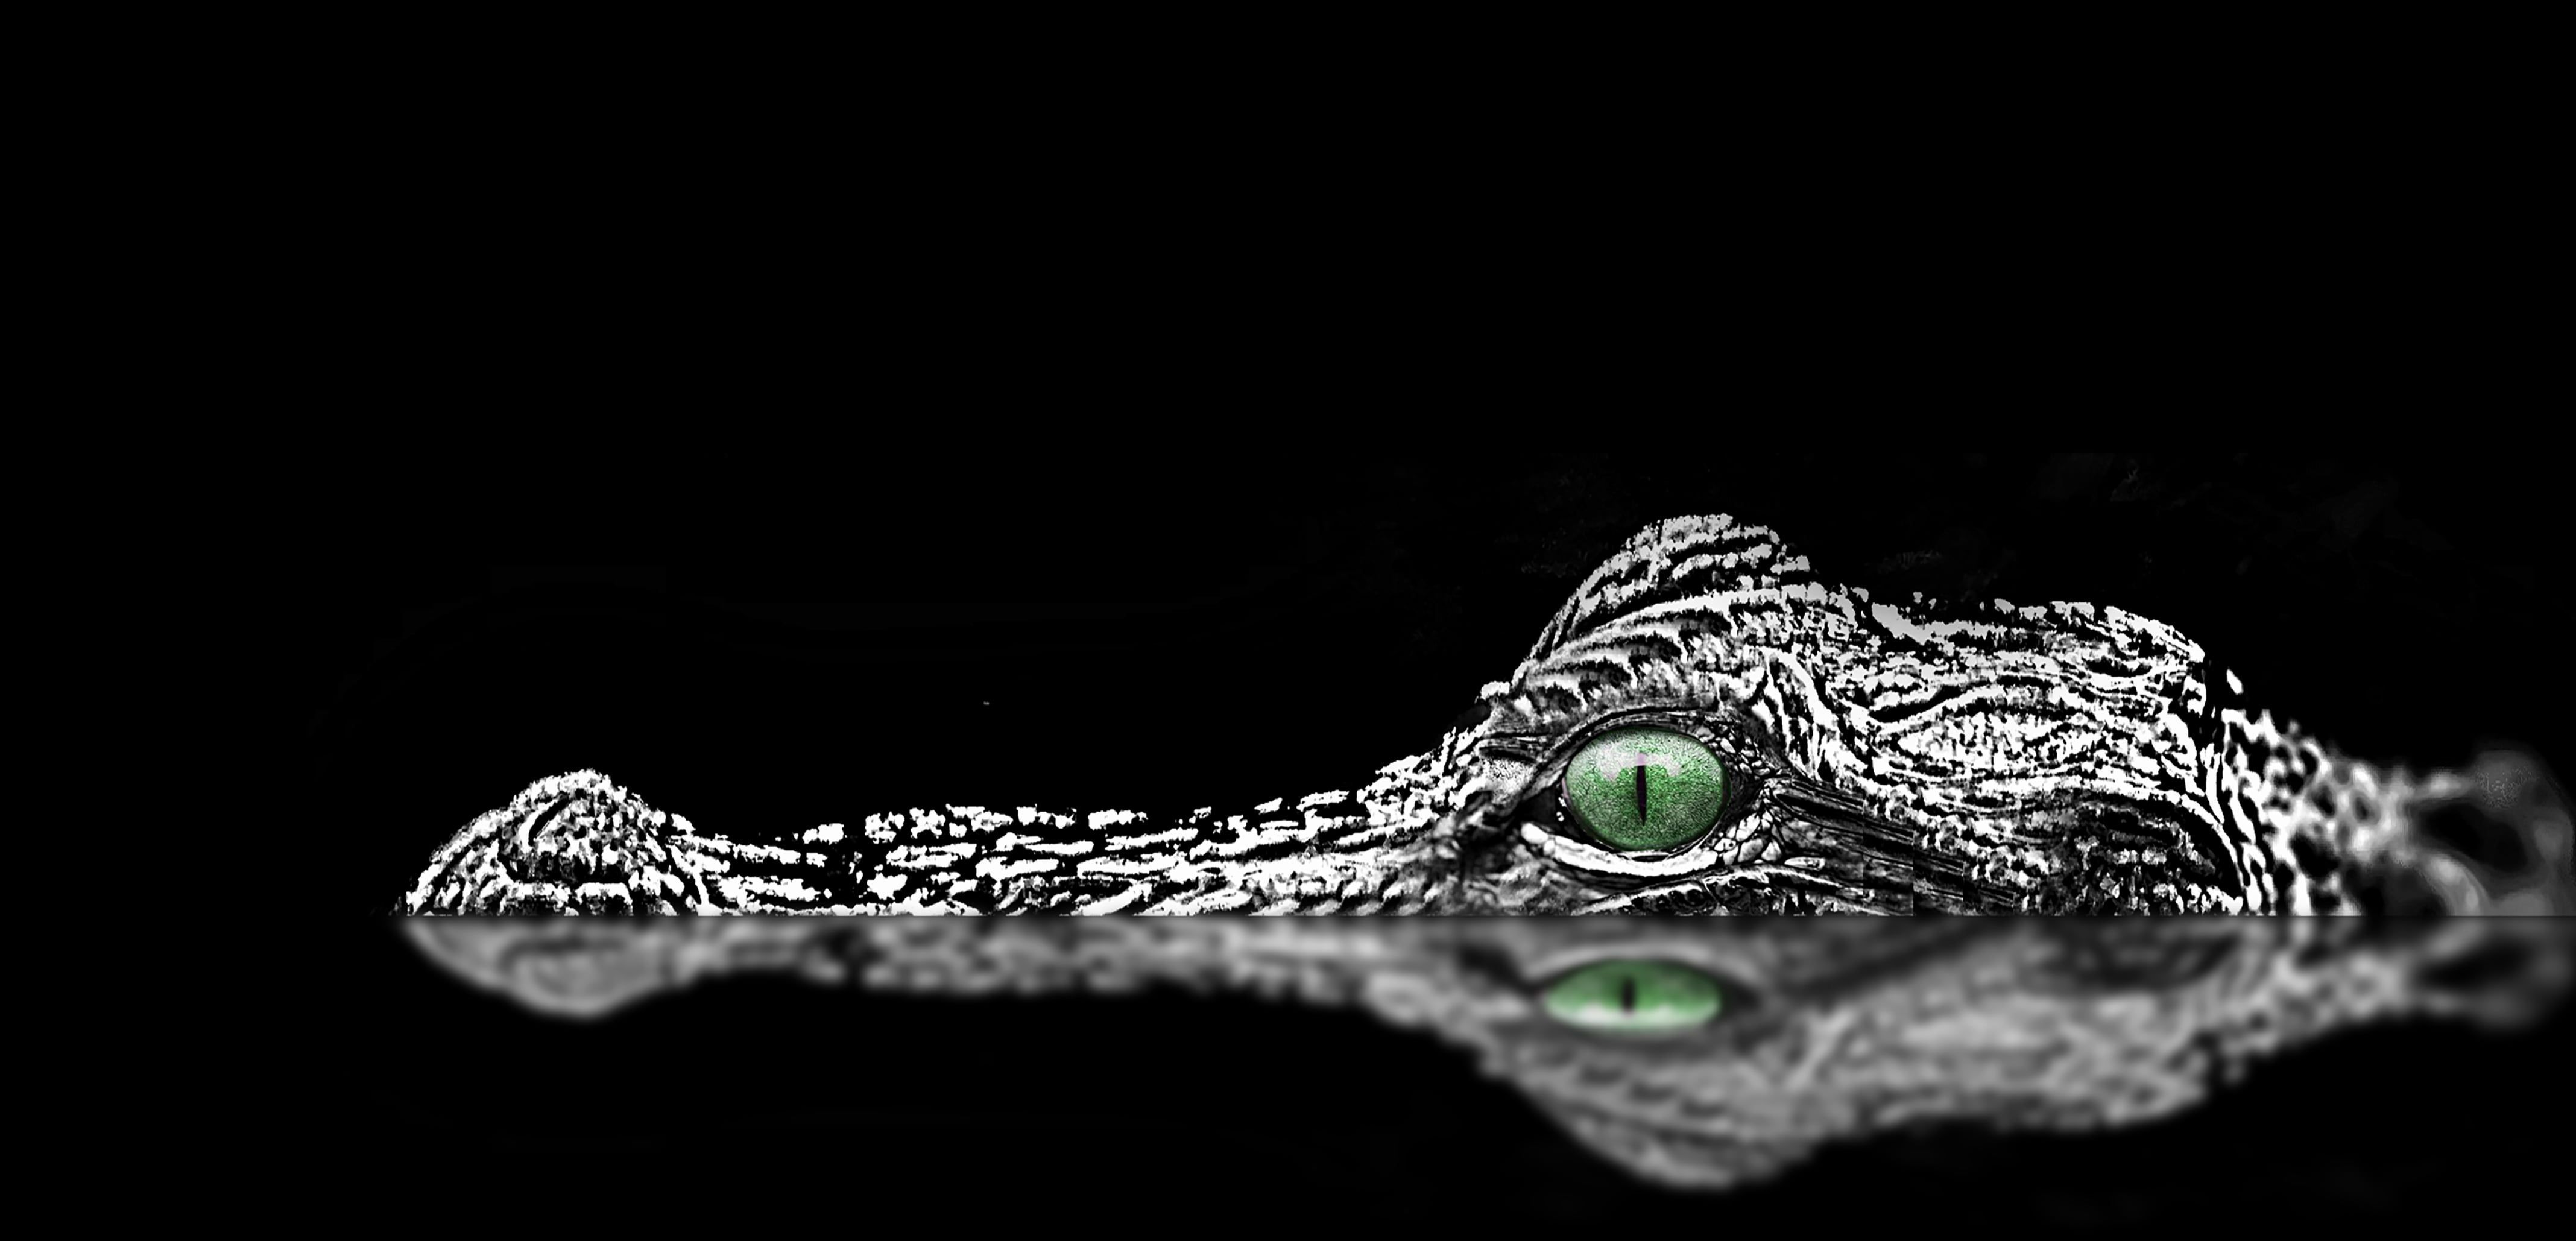 Black Alligator Wallpaper Free Black Alligator Background